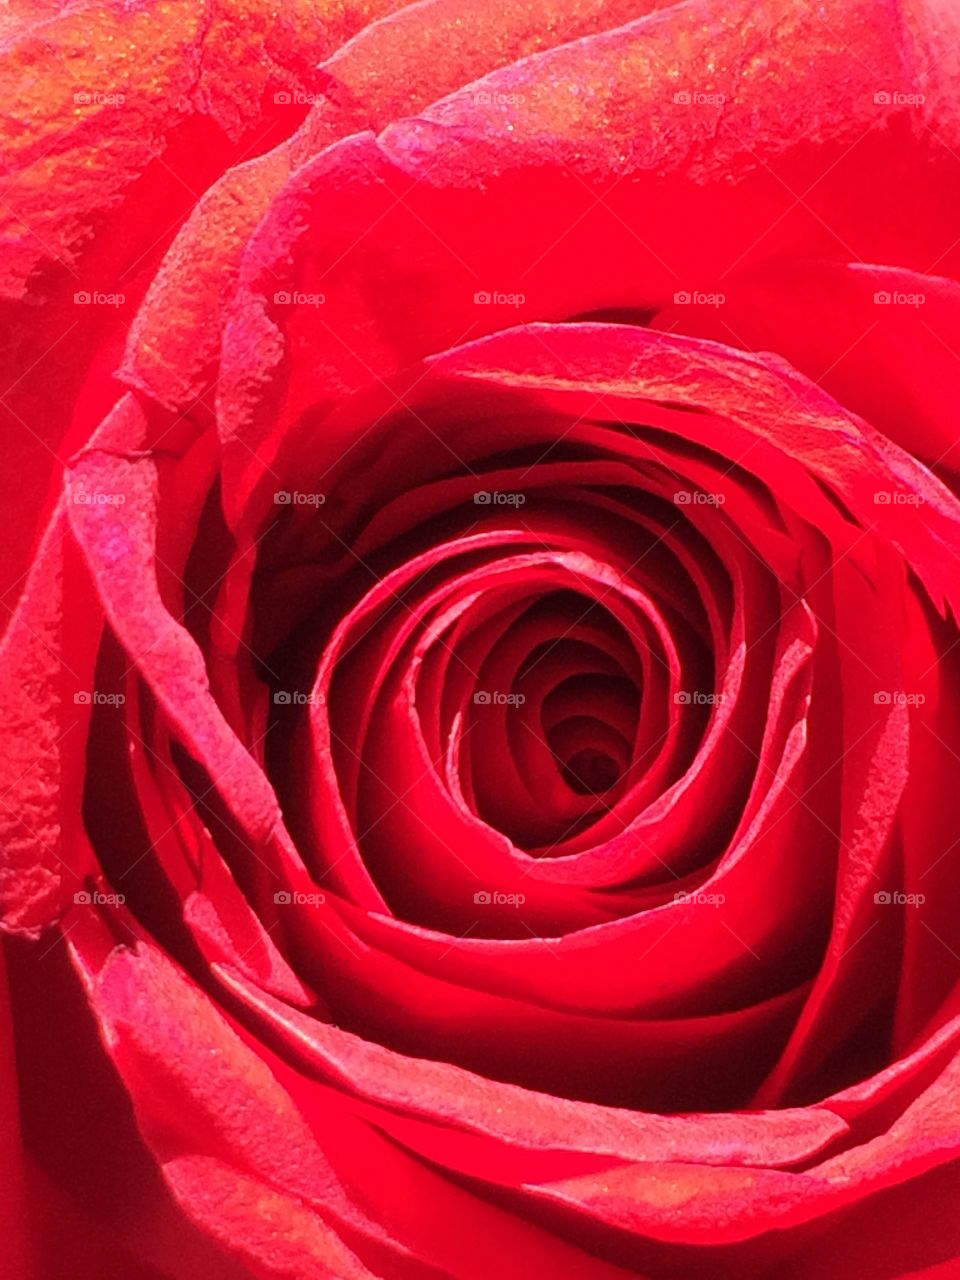 An up close rose